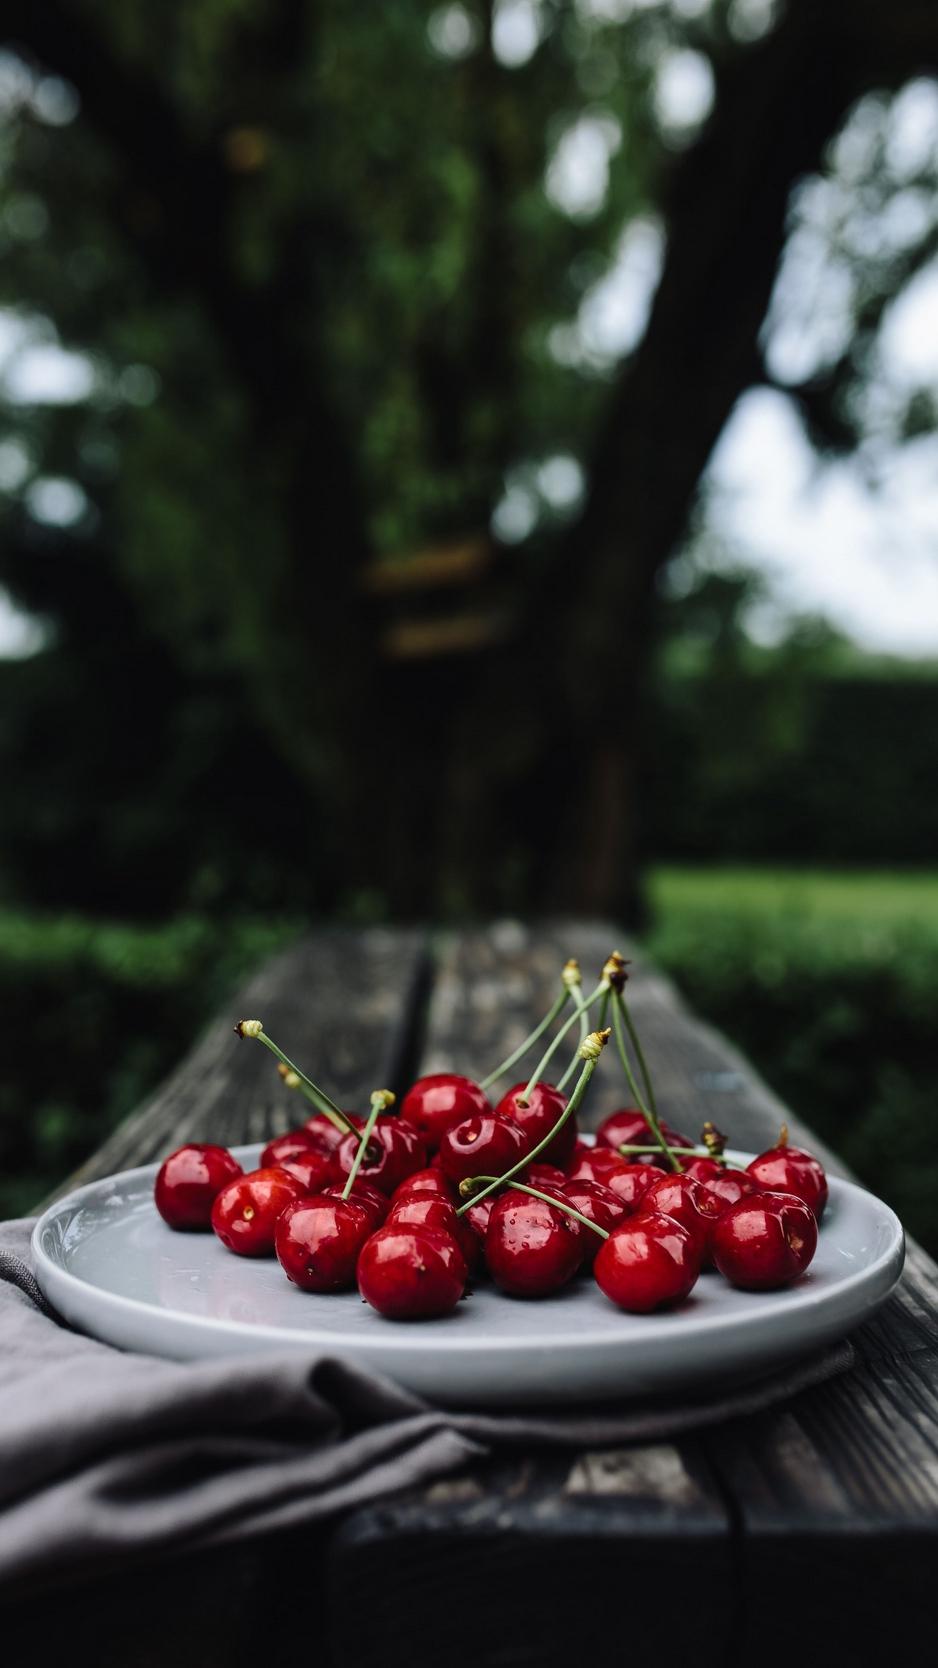 Wallpaper Cherries, Cherry, Dish, Motion Blur Cherry